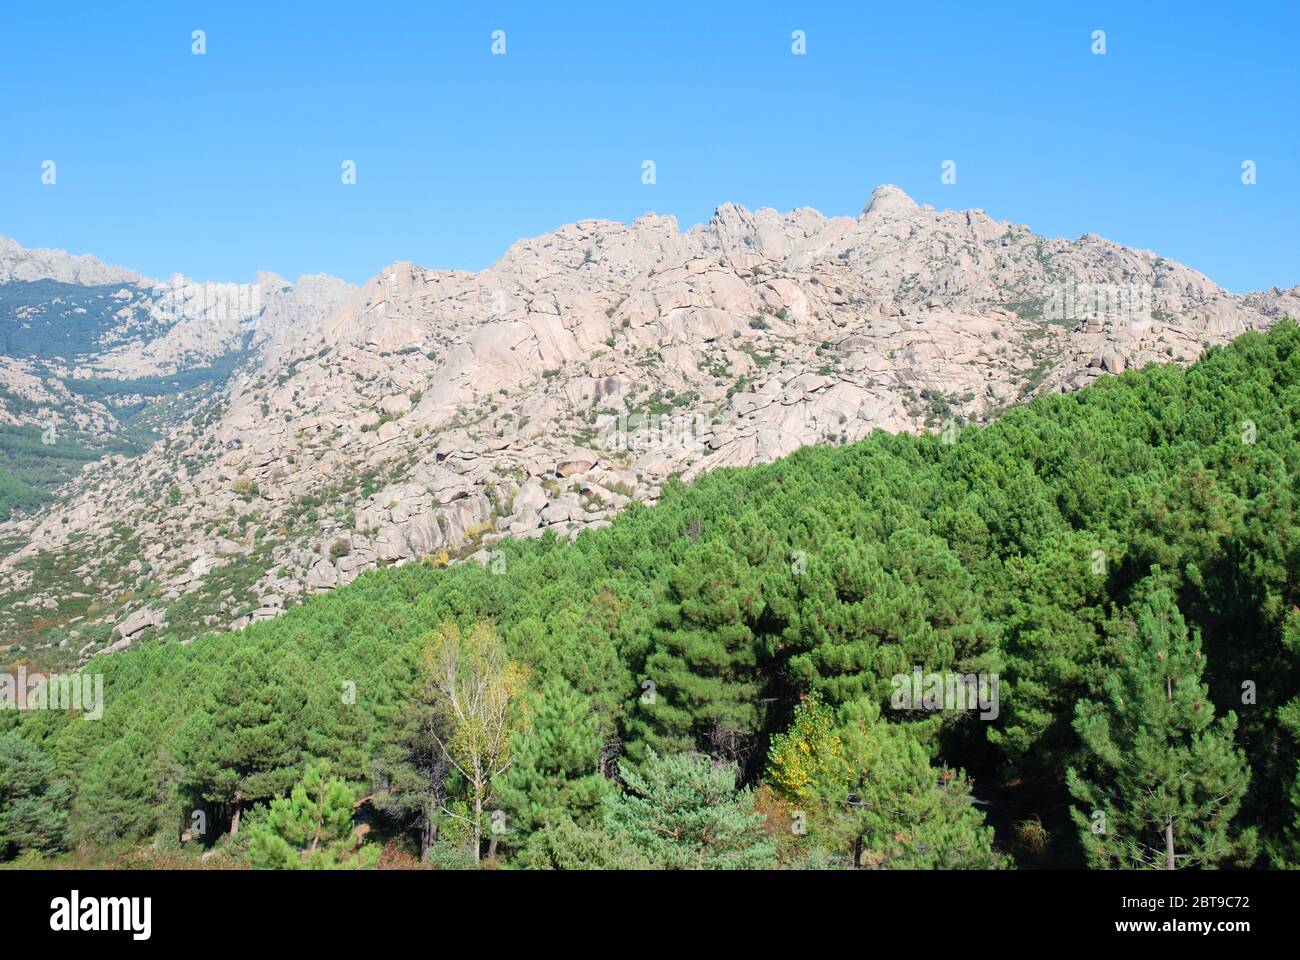 La Pedriza mountain. Cuenca Alta del Manzanares Regional Park, Madrid province, Spain. Stock Photo